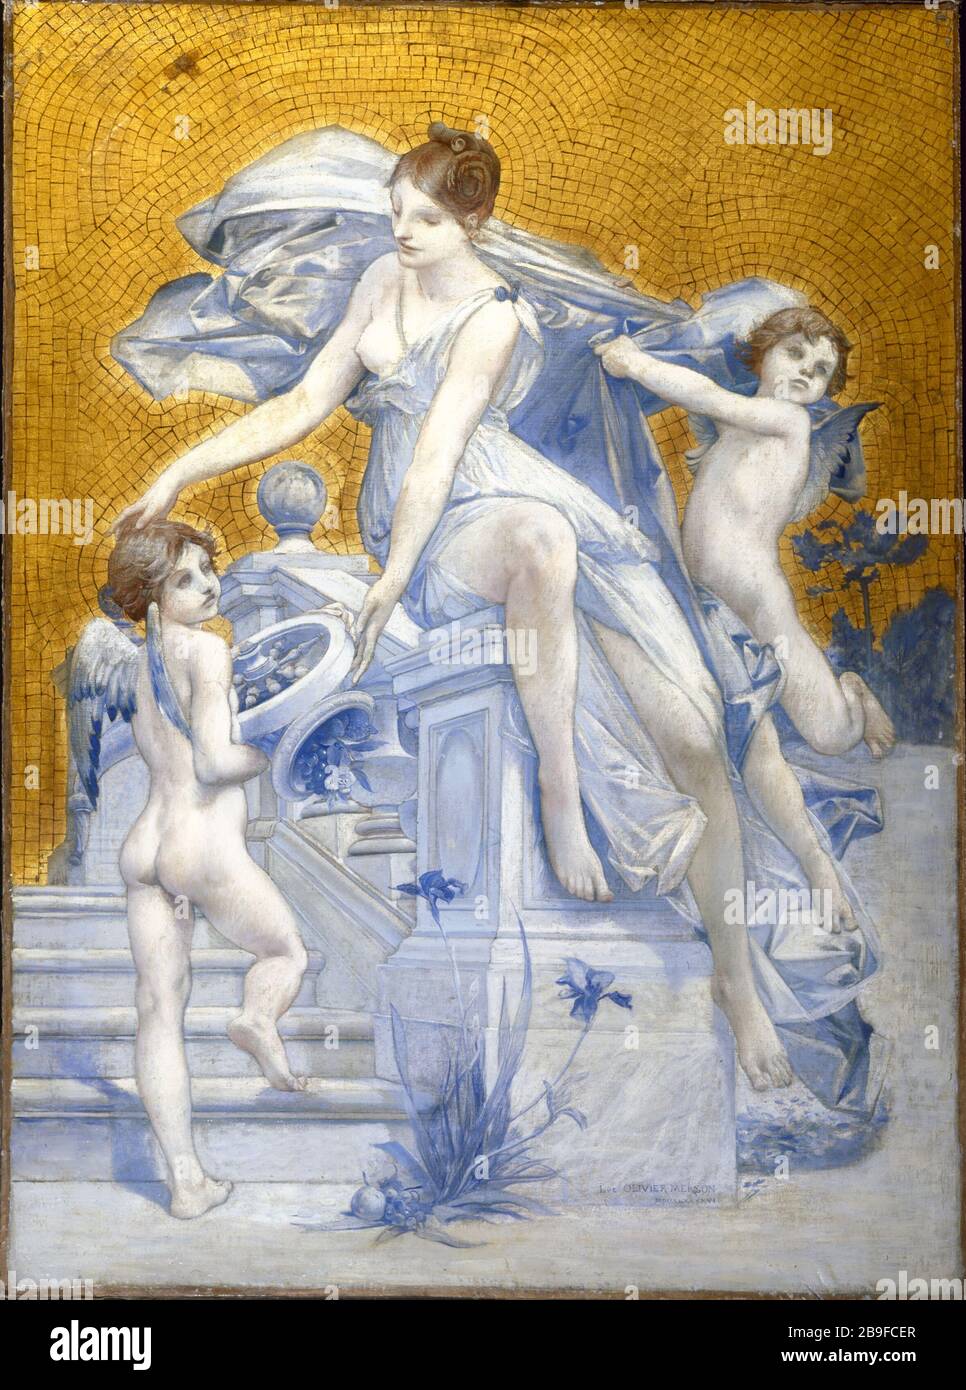 ALLEGORIE DES VERMÖGENS Luc-Olivier Merson (1846-1920). "Allégorie de la Fortune". Huile sur toile, 1896. Paris, musée Carnavalet. Stockfoto